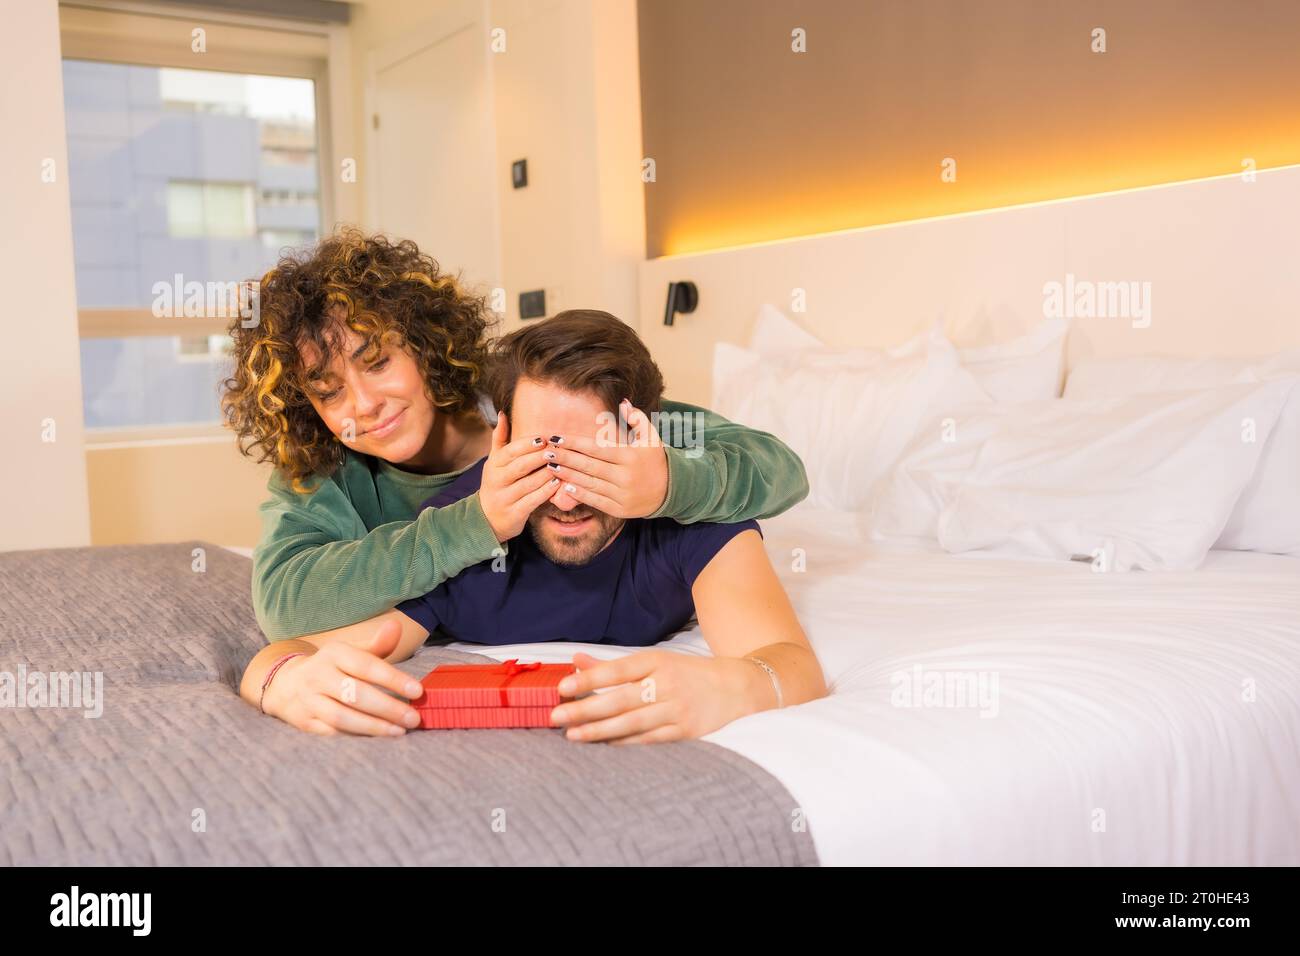 Valentinstag, an ein junges kaukasisches Paar im Pyjama auf dem Bett, die Braut gibt dem Freund eine nette Überraschung mit einem Geschenk. Mit Kopie und Stockfoto